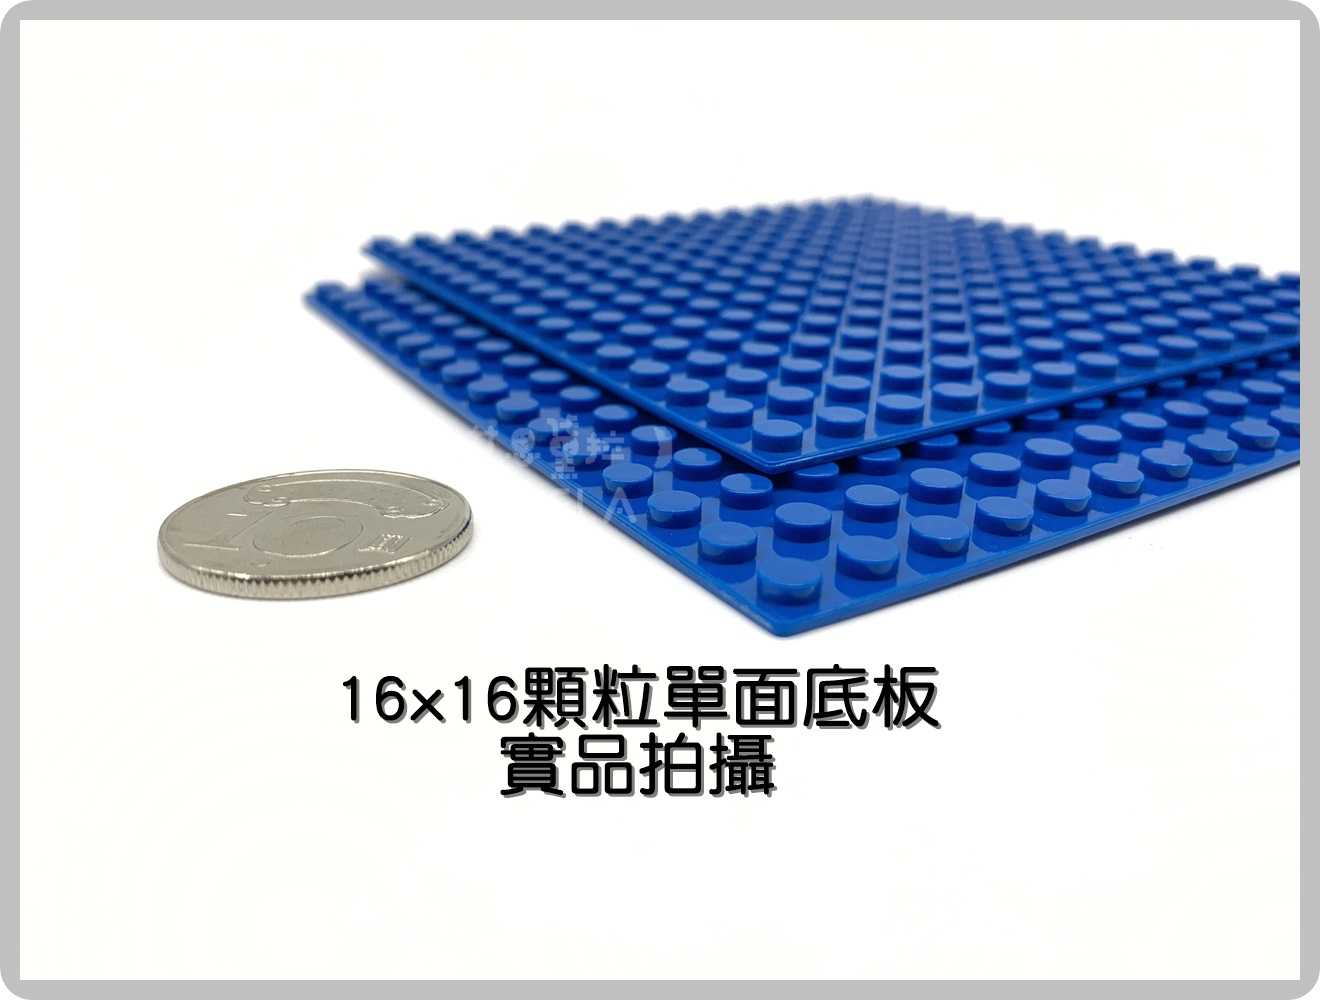 【艾思黛拉A0720】副廠 相容樂高 小顆粒 單面底板 16*16顆粒 7款可選 12.8x12.8公分 積木 LEGO